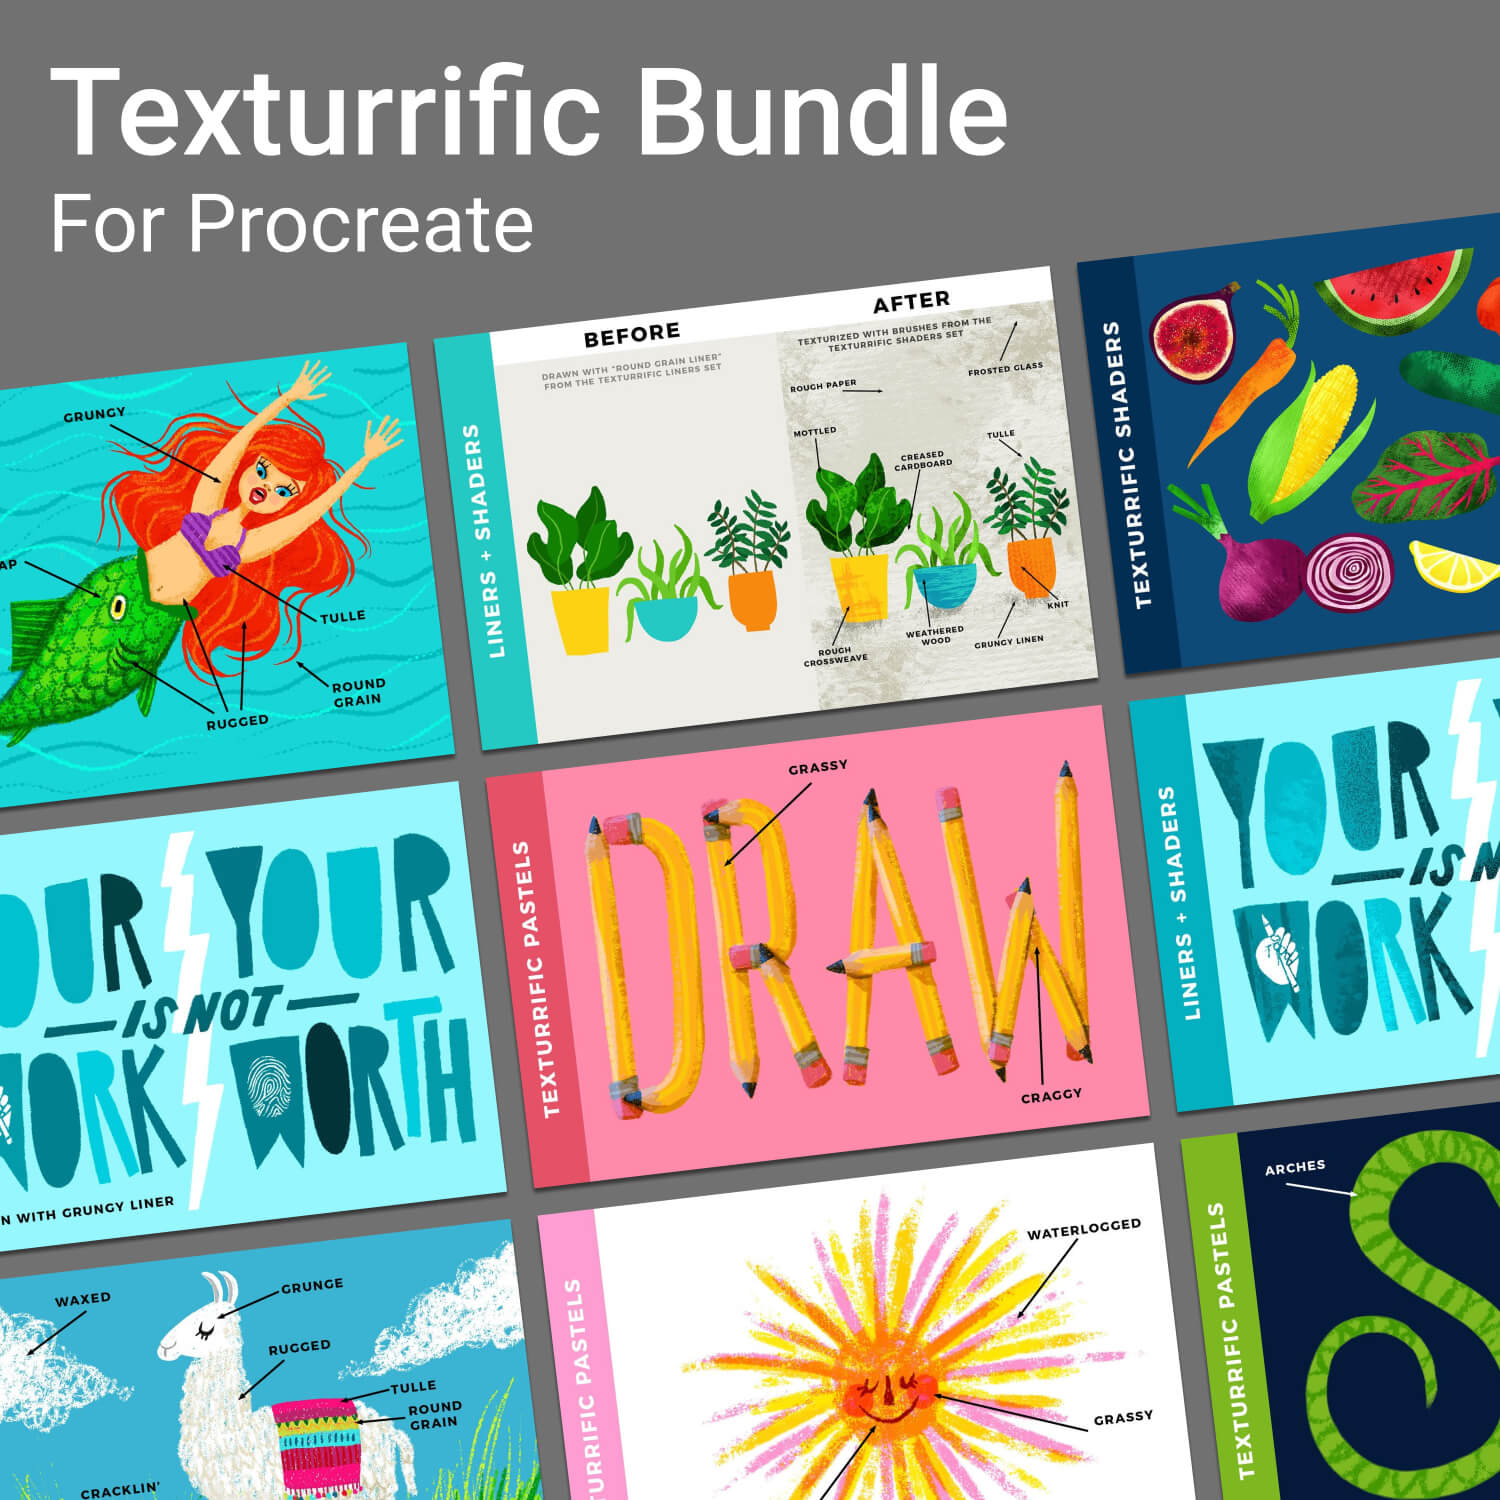 Texturrific bundle for procreate.